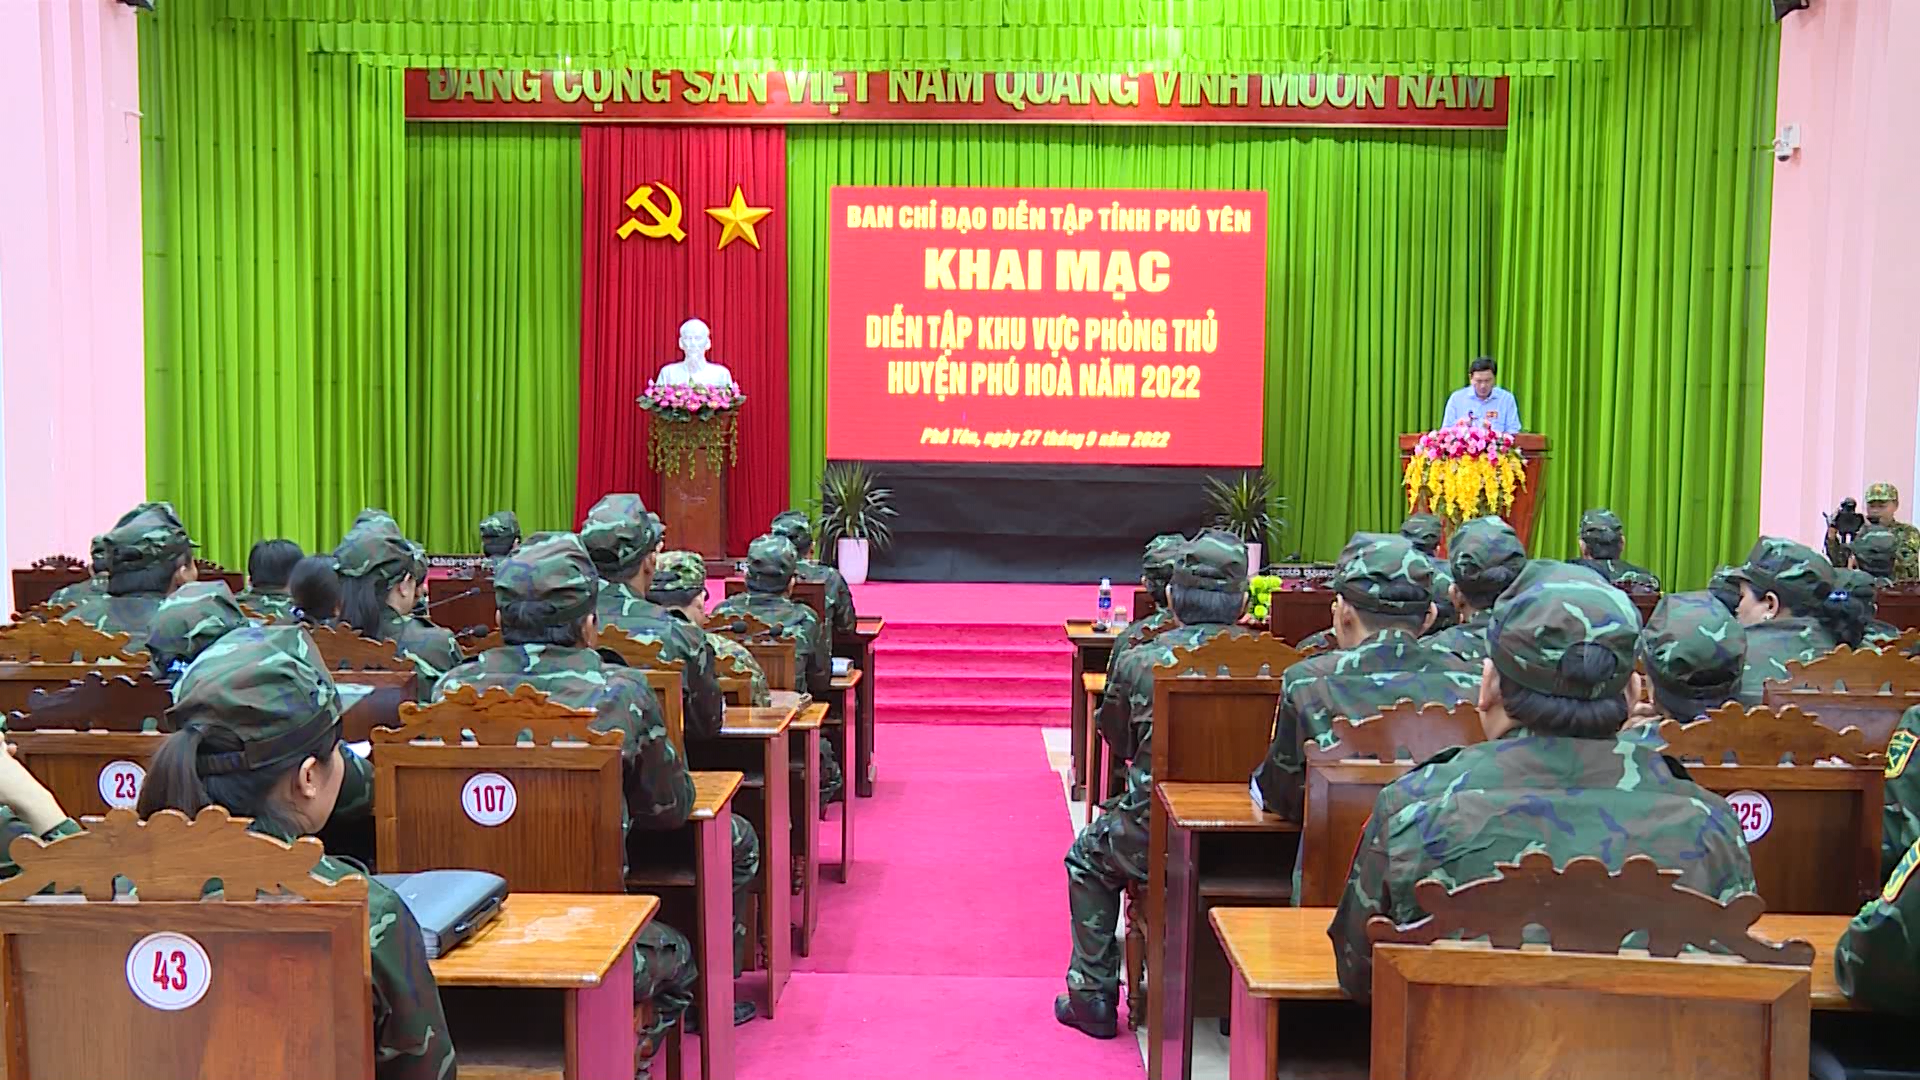 Phú Hòa: khai mạc diễn tập khu vực phòng thủ huyện năm 2022 (PH-22)